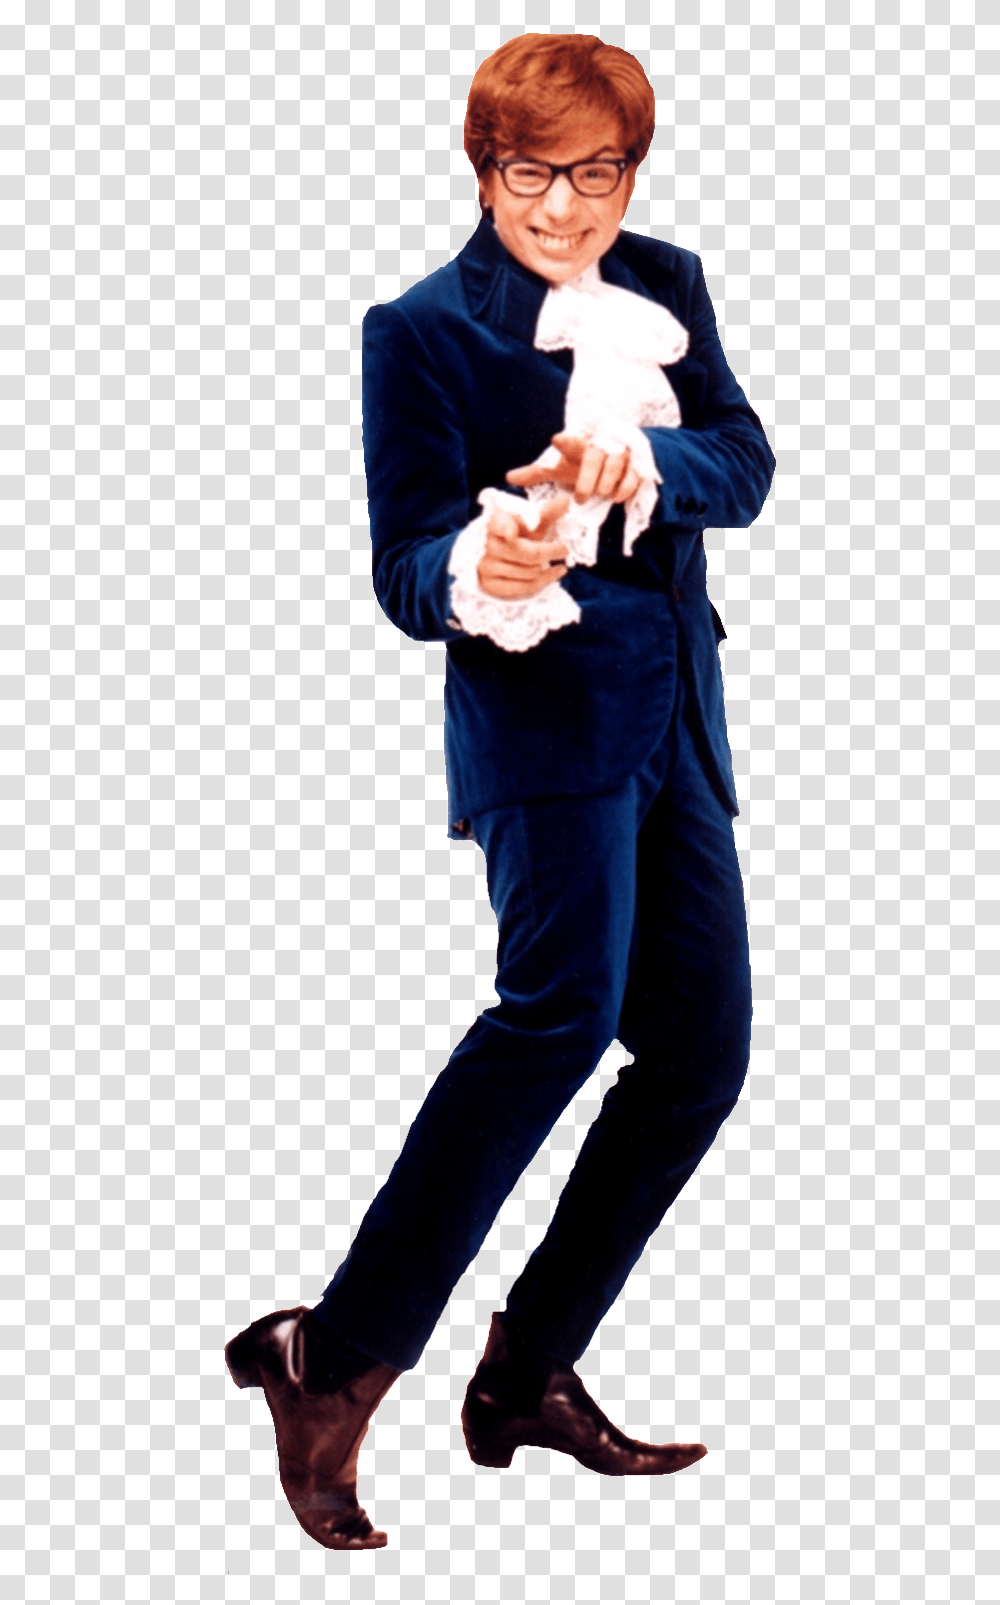 Austin Powers Blue Suit, Person, Finger, Overcoat Transparent Png